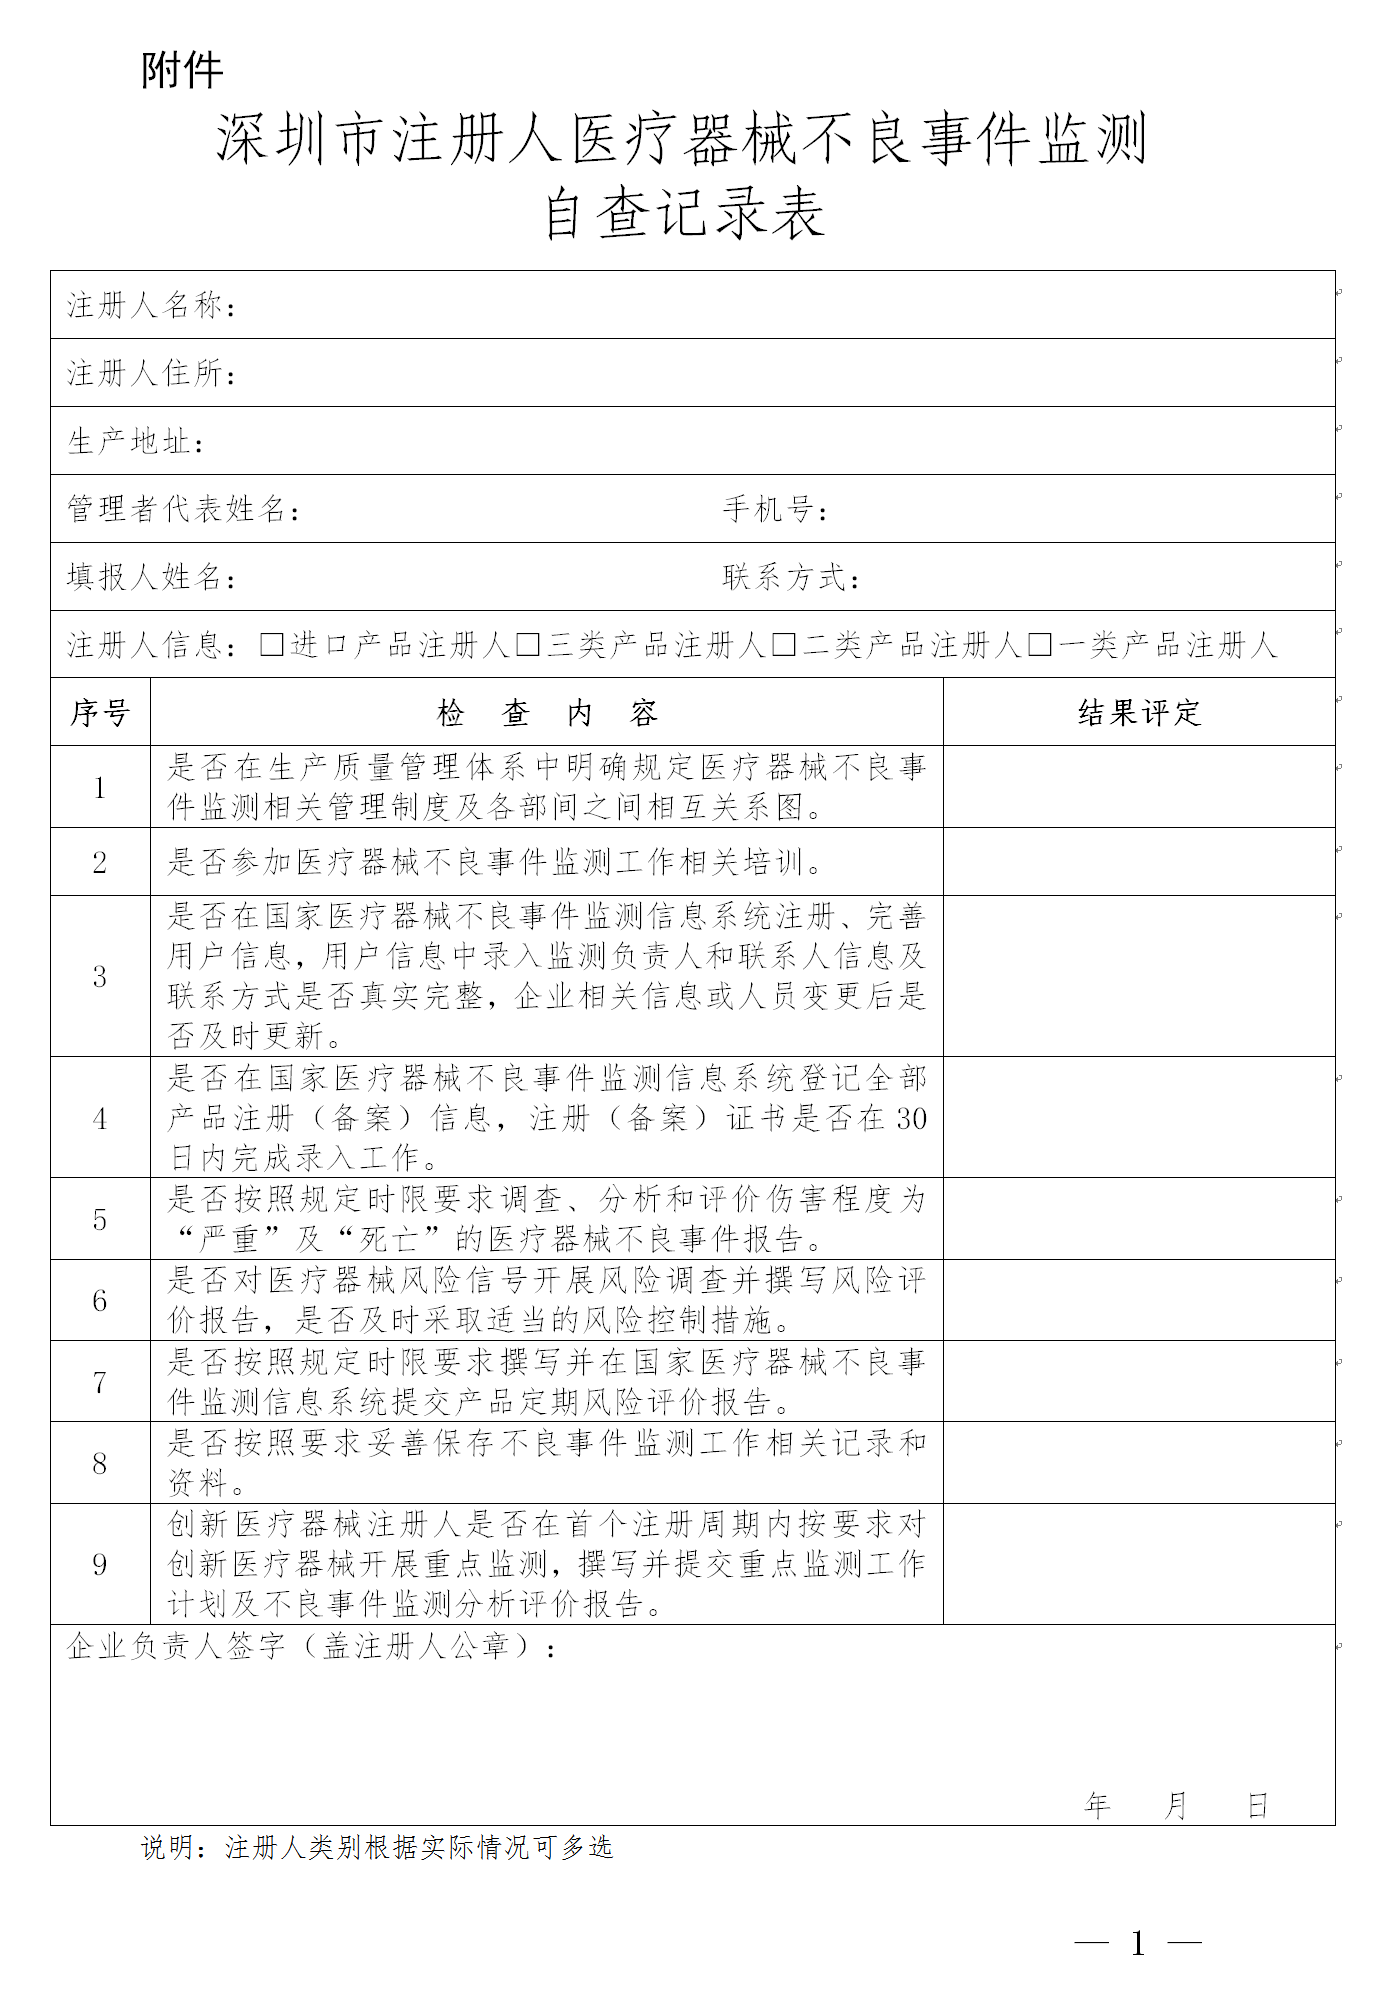 深圳市注册人医疗器械不良事件监测自查记录表